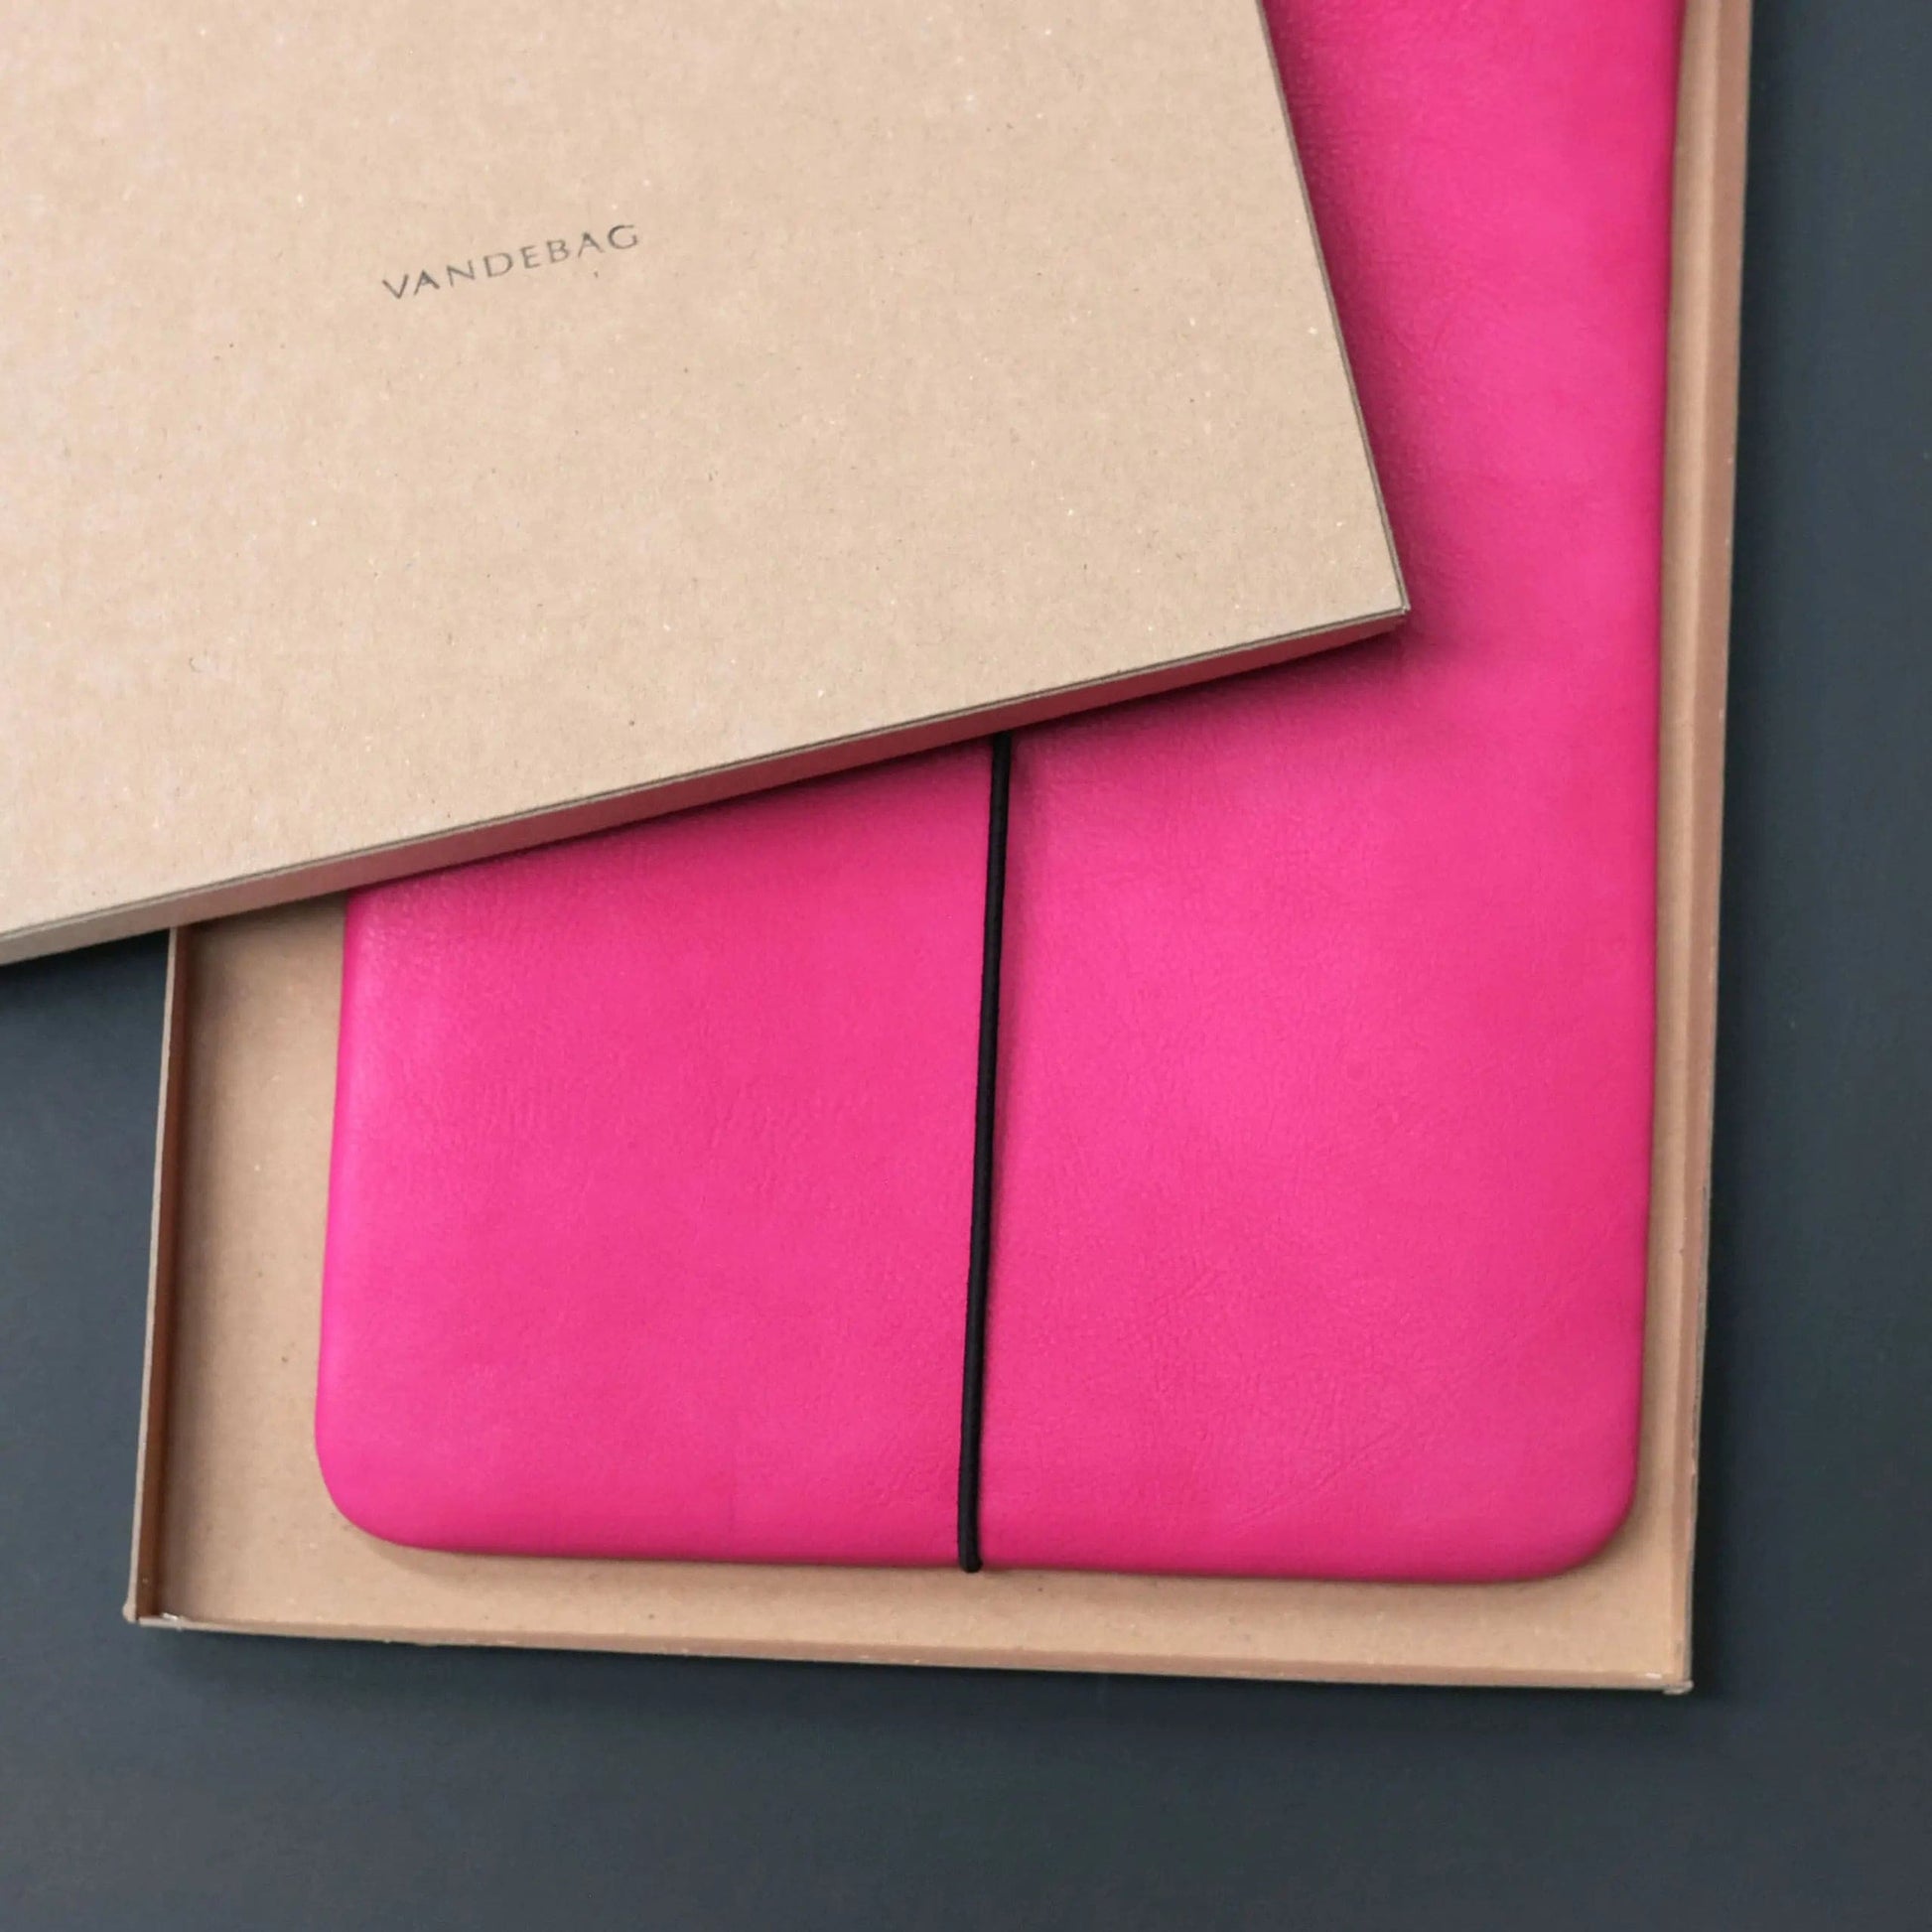 Macbookhülle aus pinkem Leder liegt in einer Produkbox mit der Aufschrift VANDEBAG